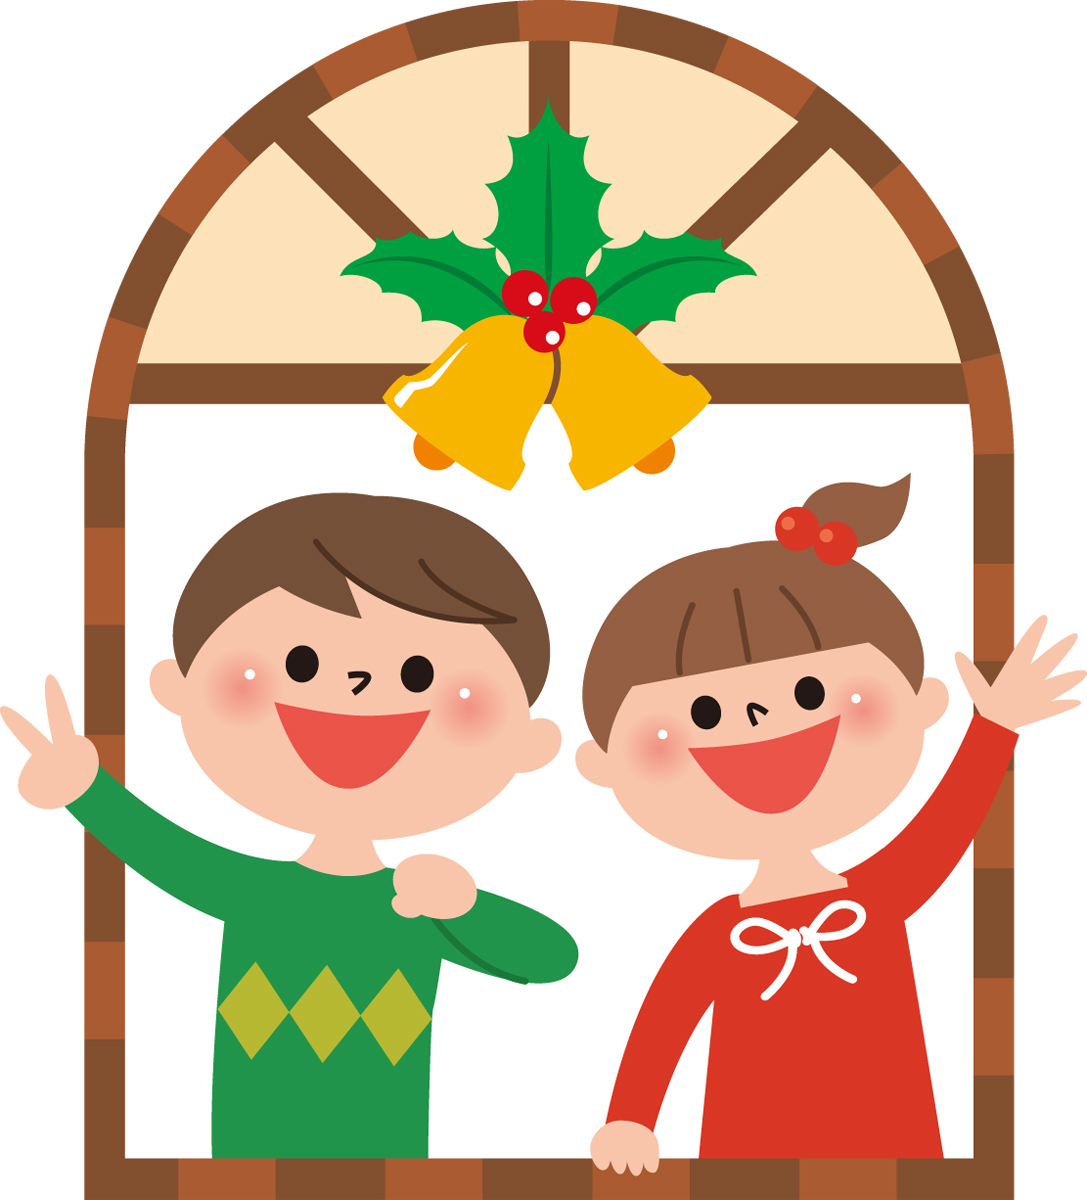 【大津市立図書館】12月の「おはなし会」まとめ★今月はクリスマスお楽しみ会もあるよ♪